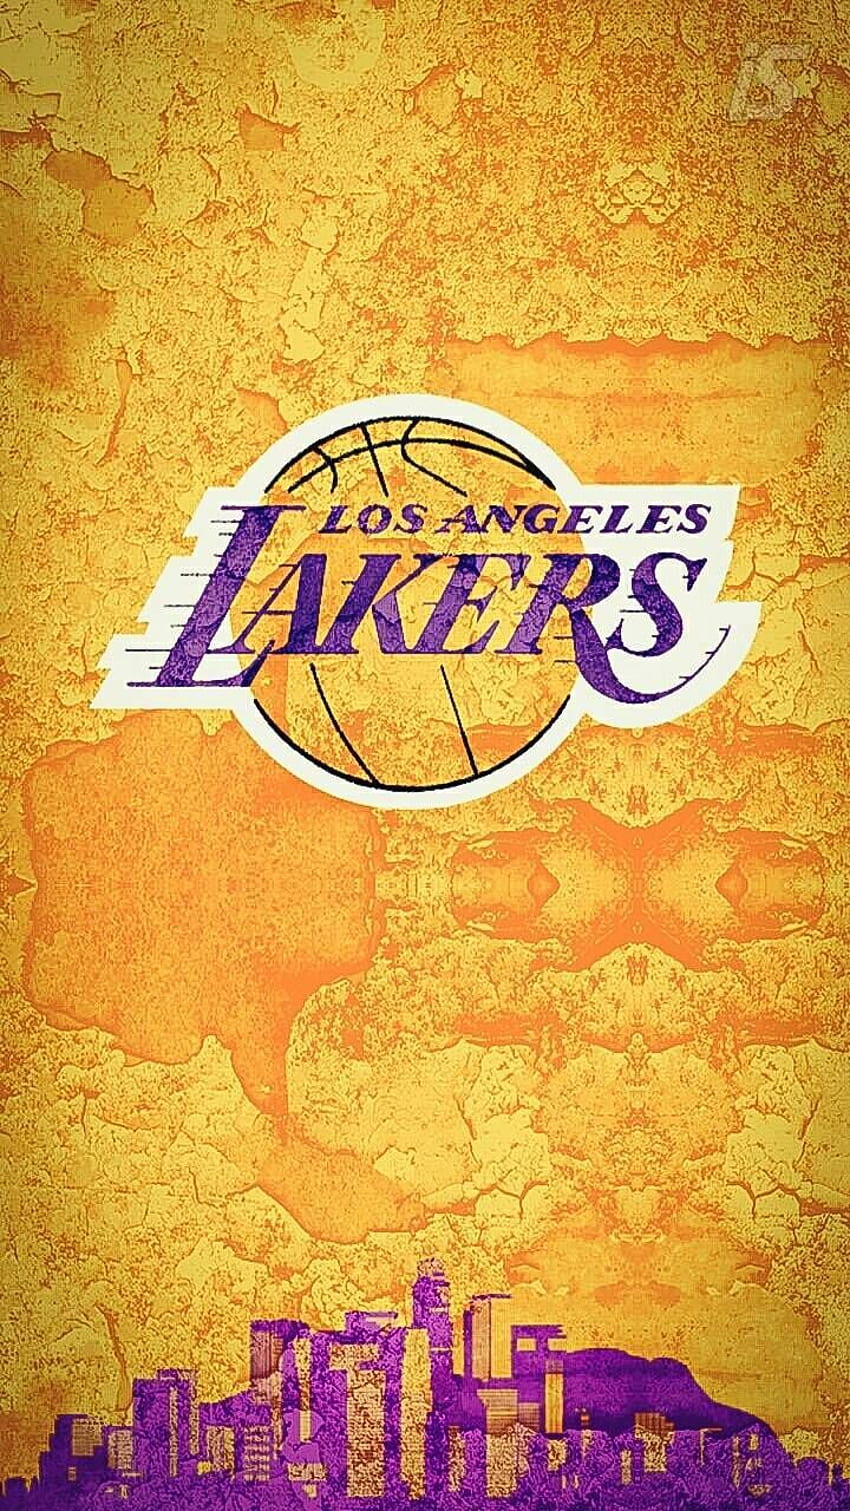 Lakers, LA Lakers iPhone HD phone wallpaper